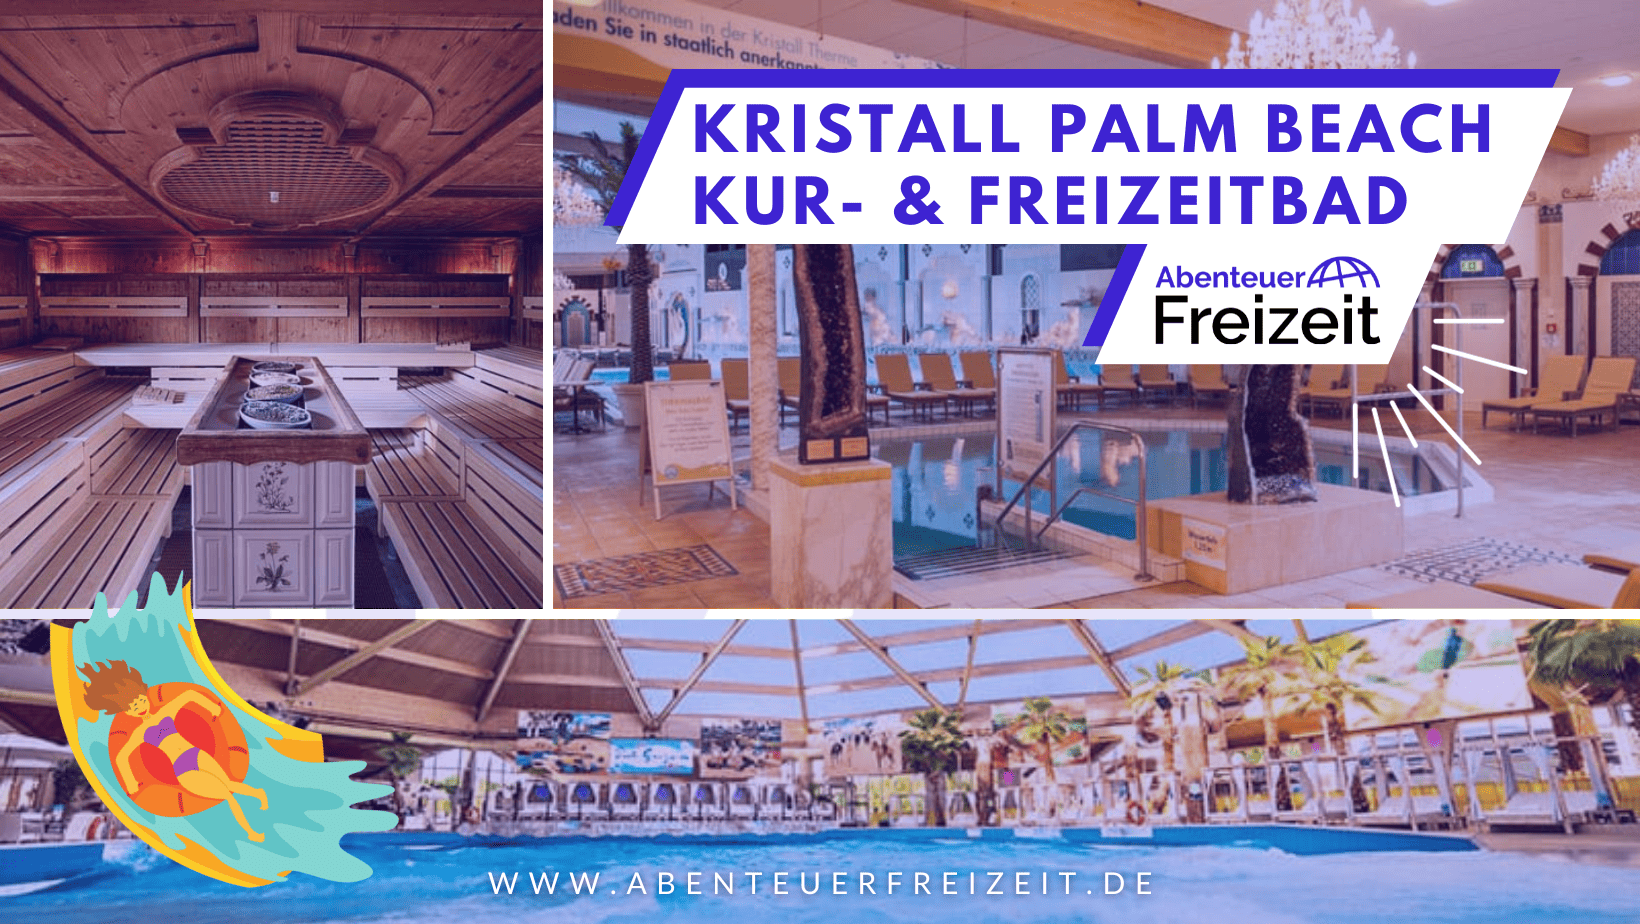 Das Kristall Palm Beach Kur- & Freizeitbad, Erlebnisbad in Stein, Bayern